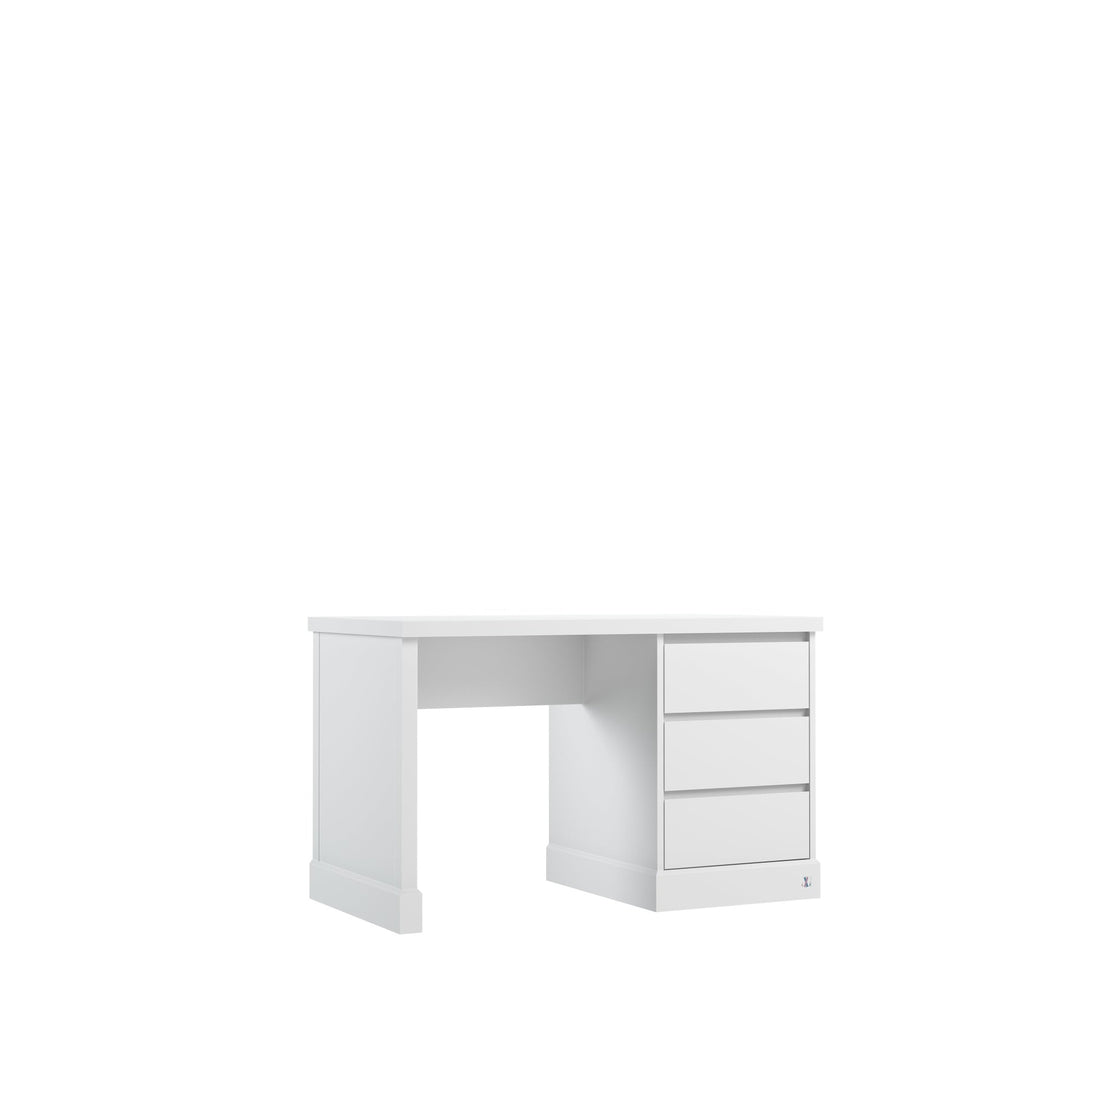 desk PRESTIGE with 3 drawers | white modern desk | modern desk with drawers | modern children furniture | modern kids furniture | manufacturer luxury children furniture